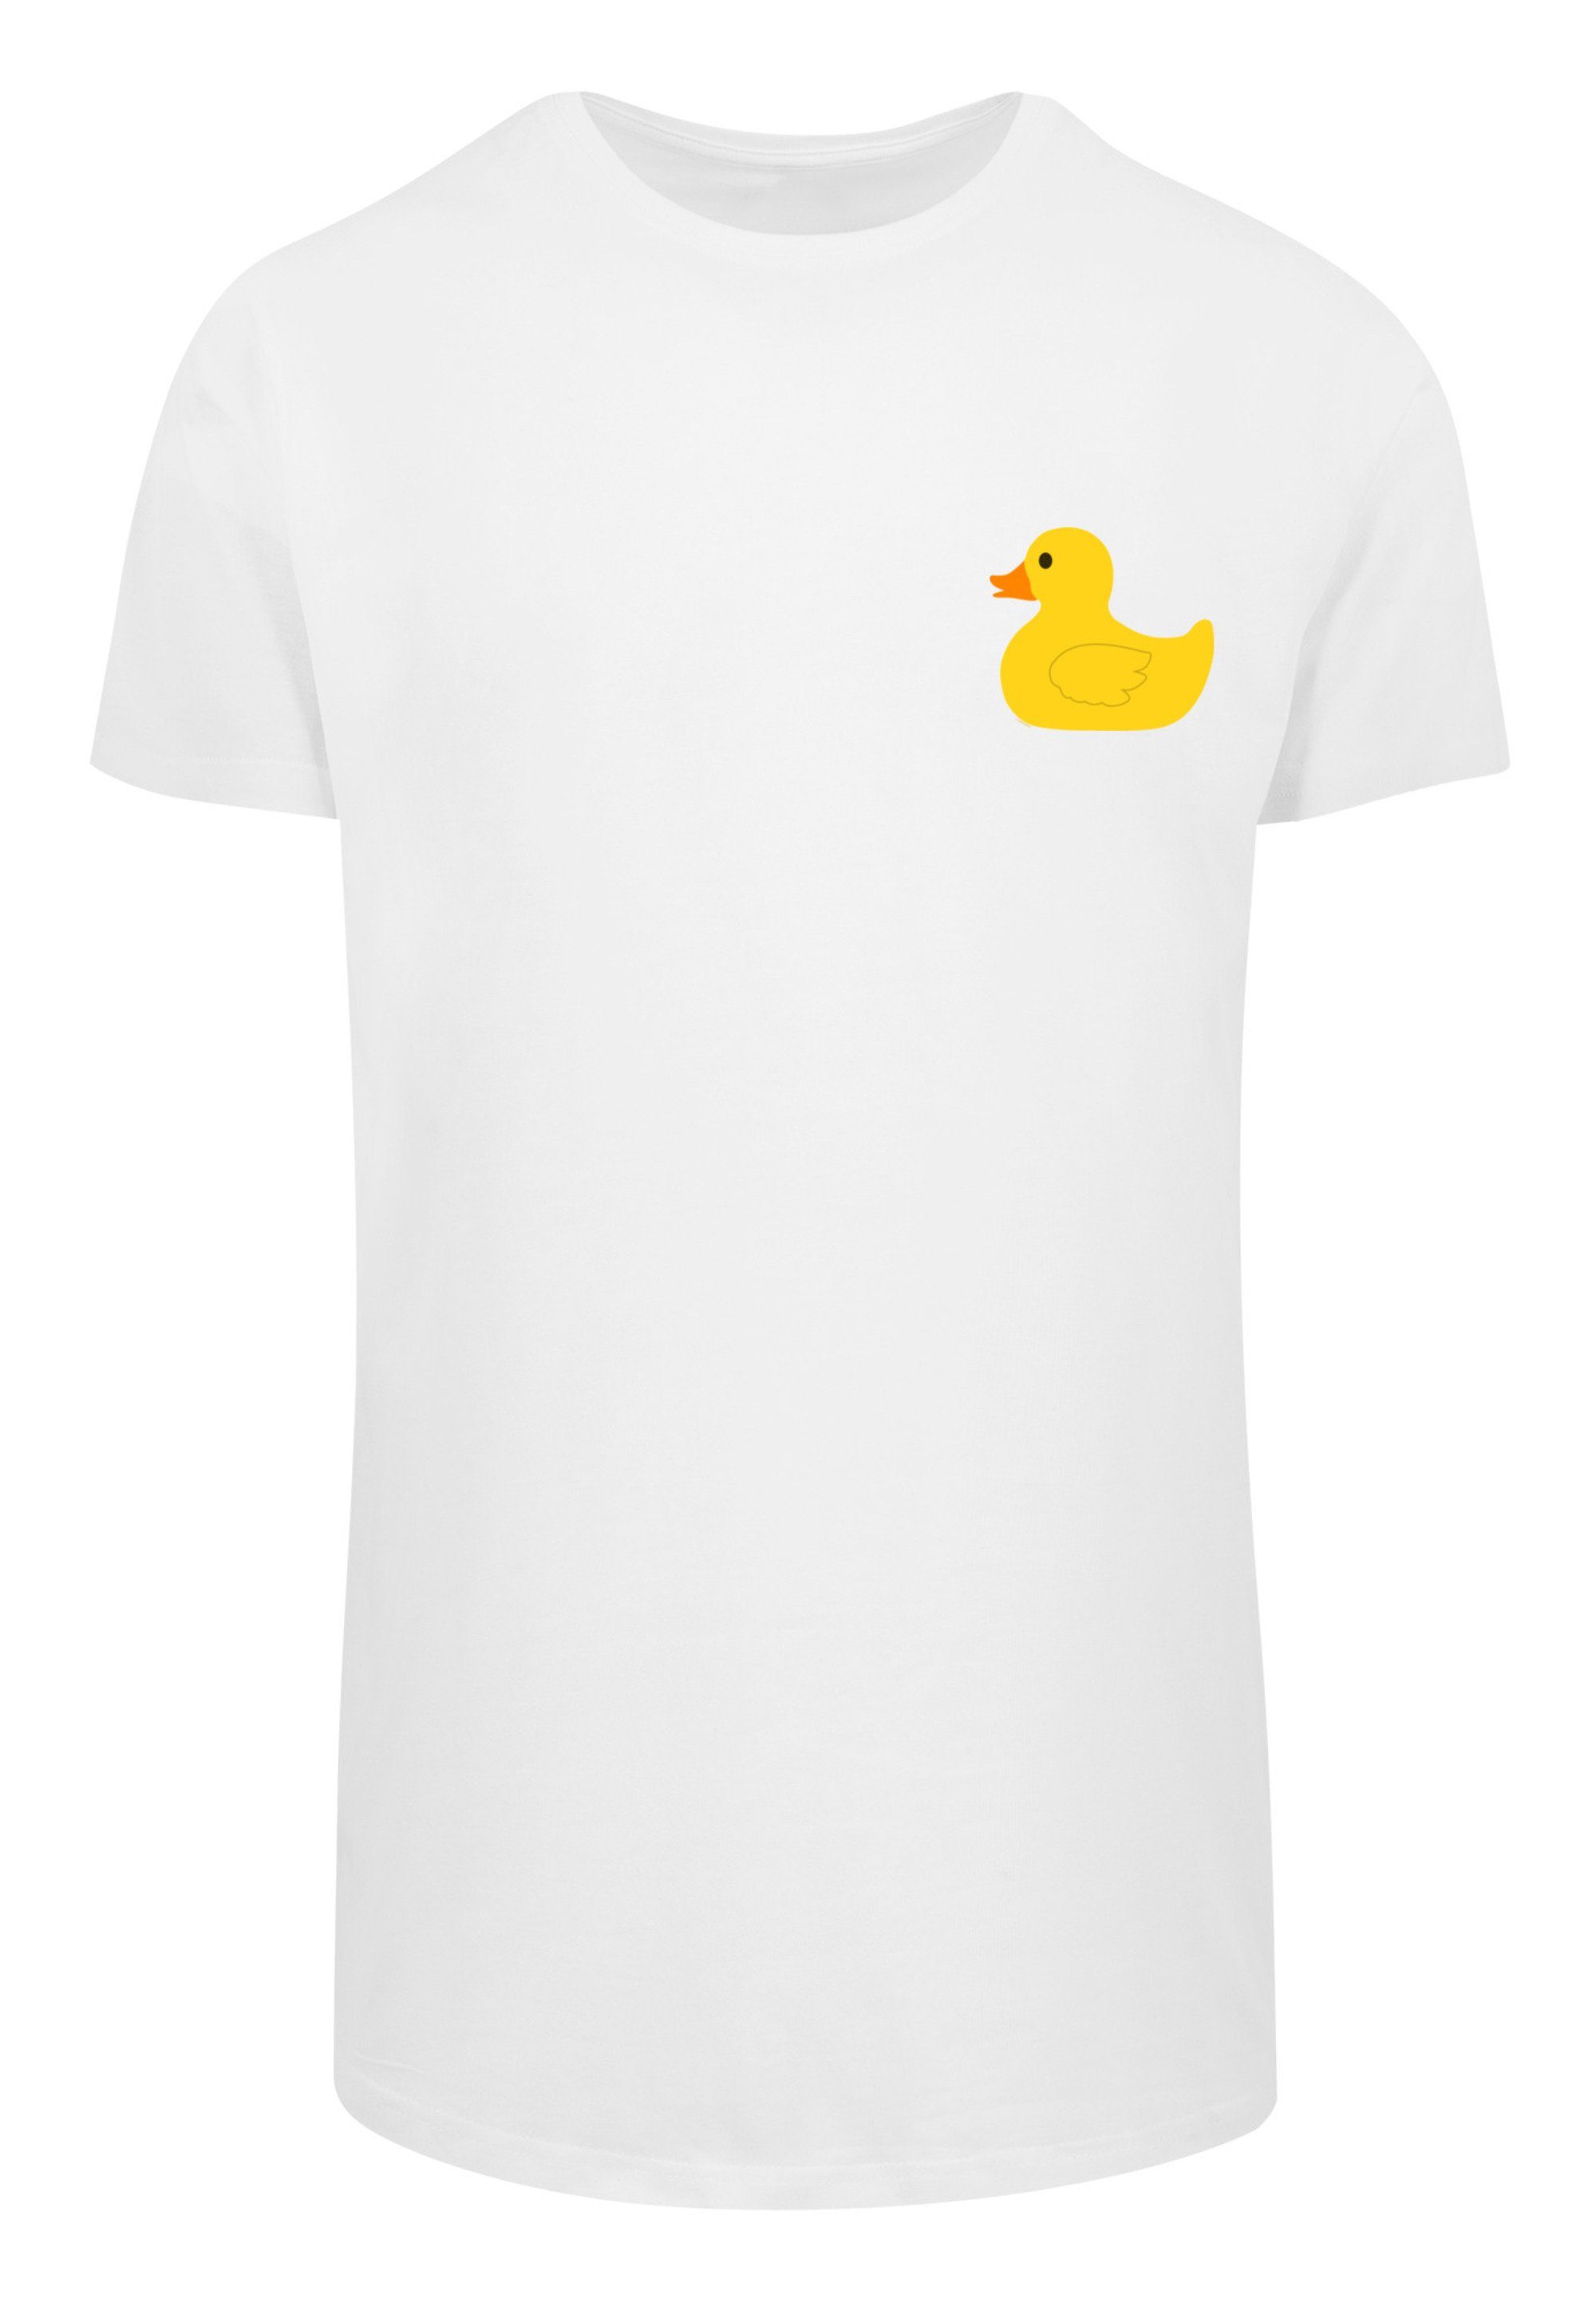 F4NT4STIC T-Shirt Yellow Rubber Duck LONG weiß Print